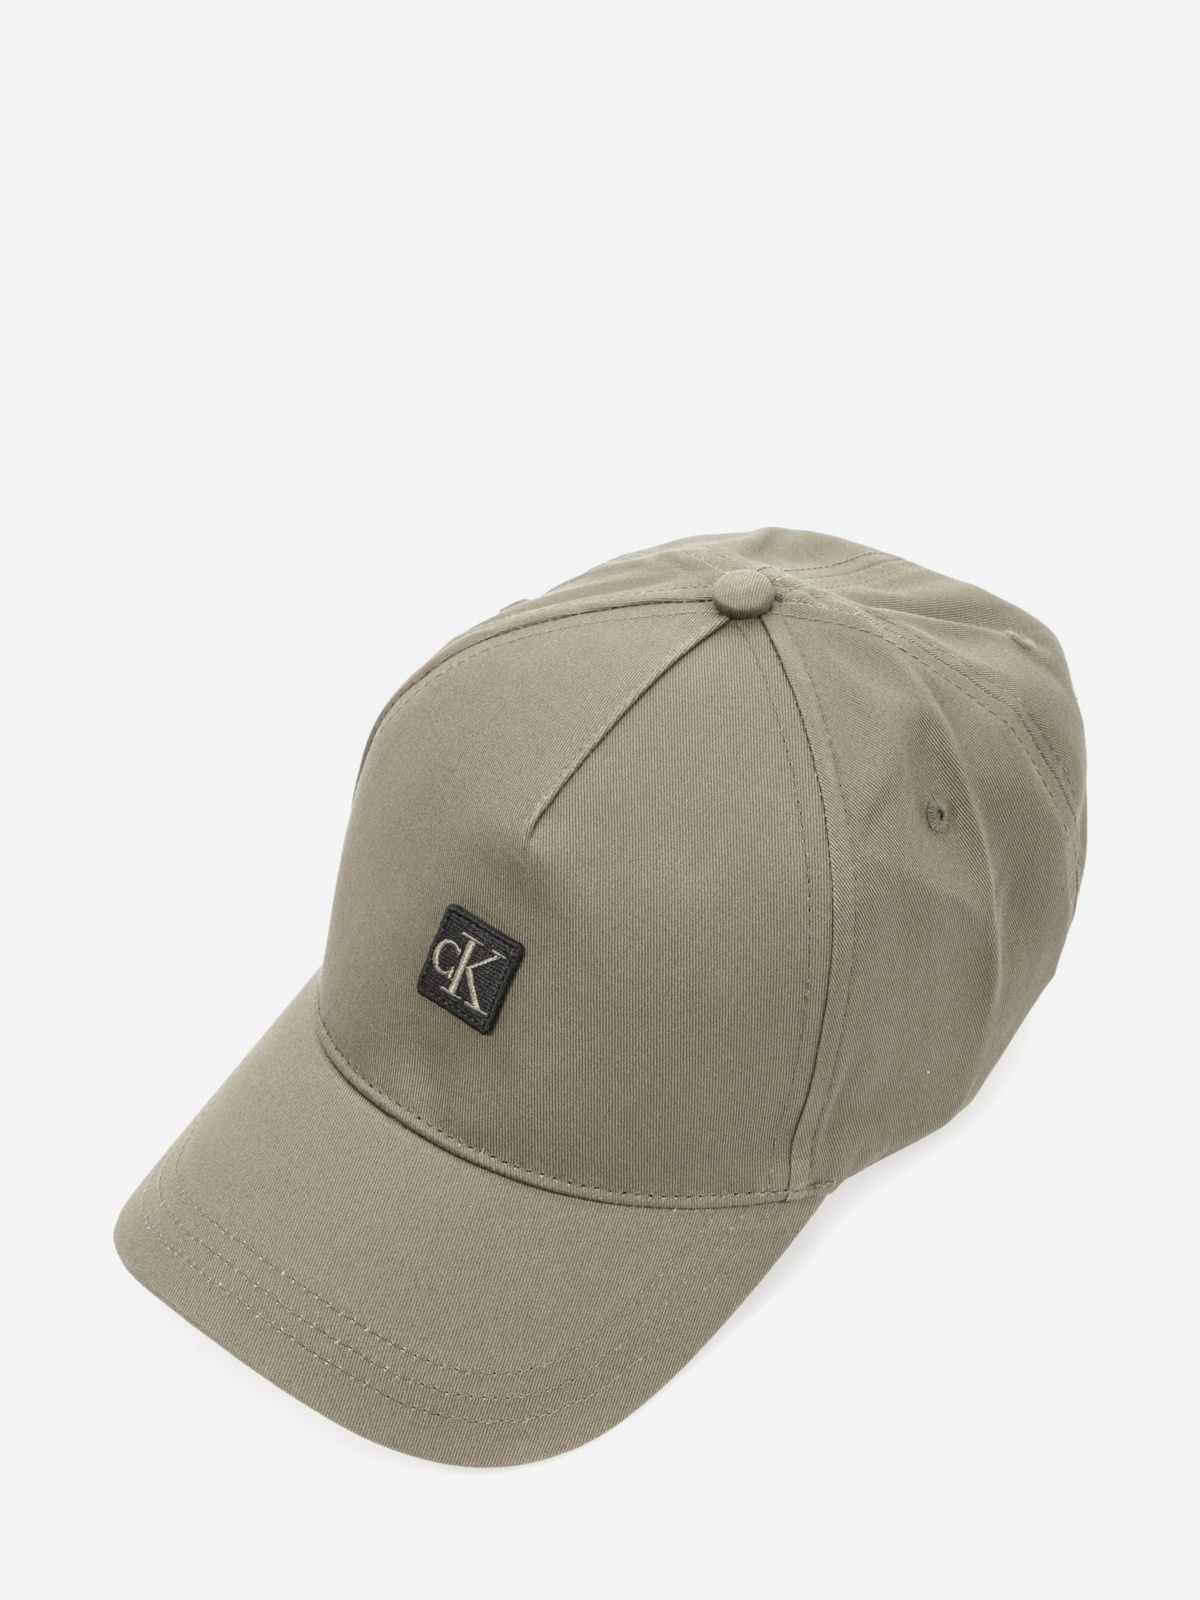 Unisex kepurė su snapeliu, | Calvin Klein CAP Jeans ARCHIVE